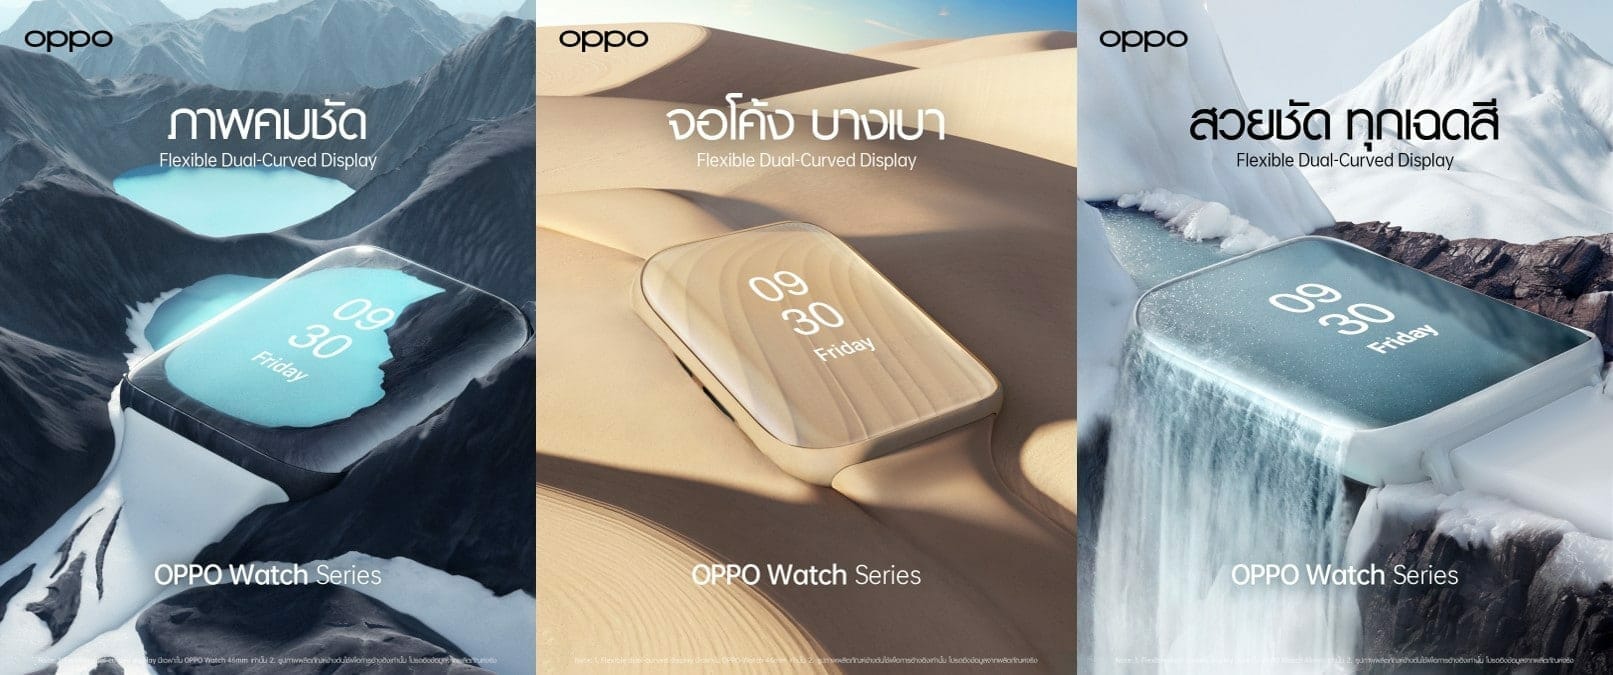 OPPO Watch Series ปลดล็อคทุกการเชื่อมต่อในสไตล์ที่เป็นคุณ ด้วยดีไซน์ที่โดดเด่น 1